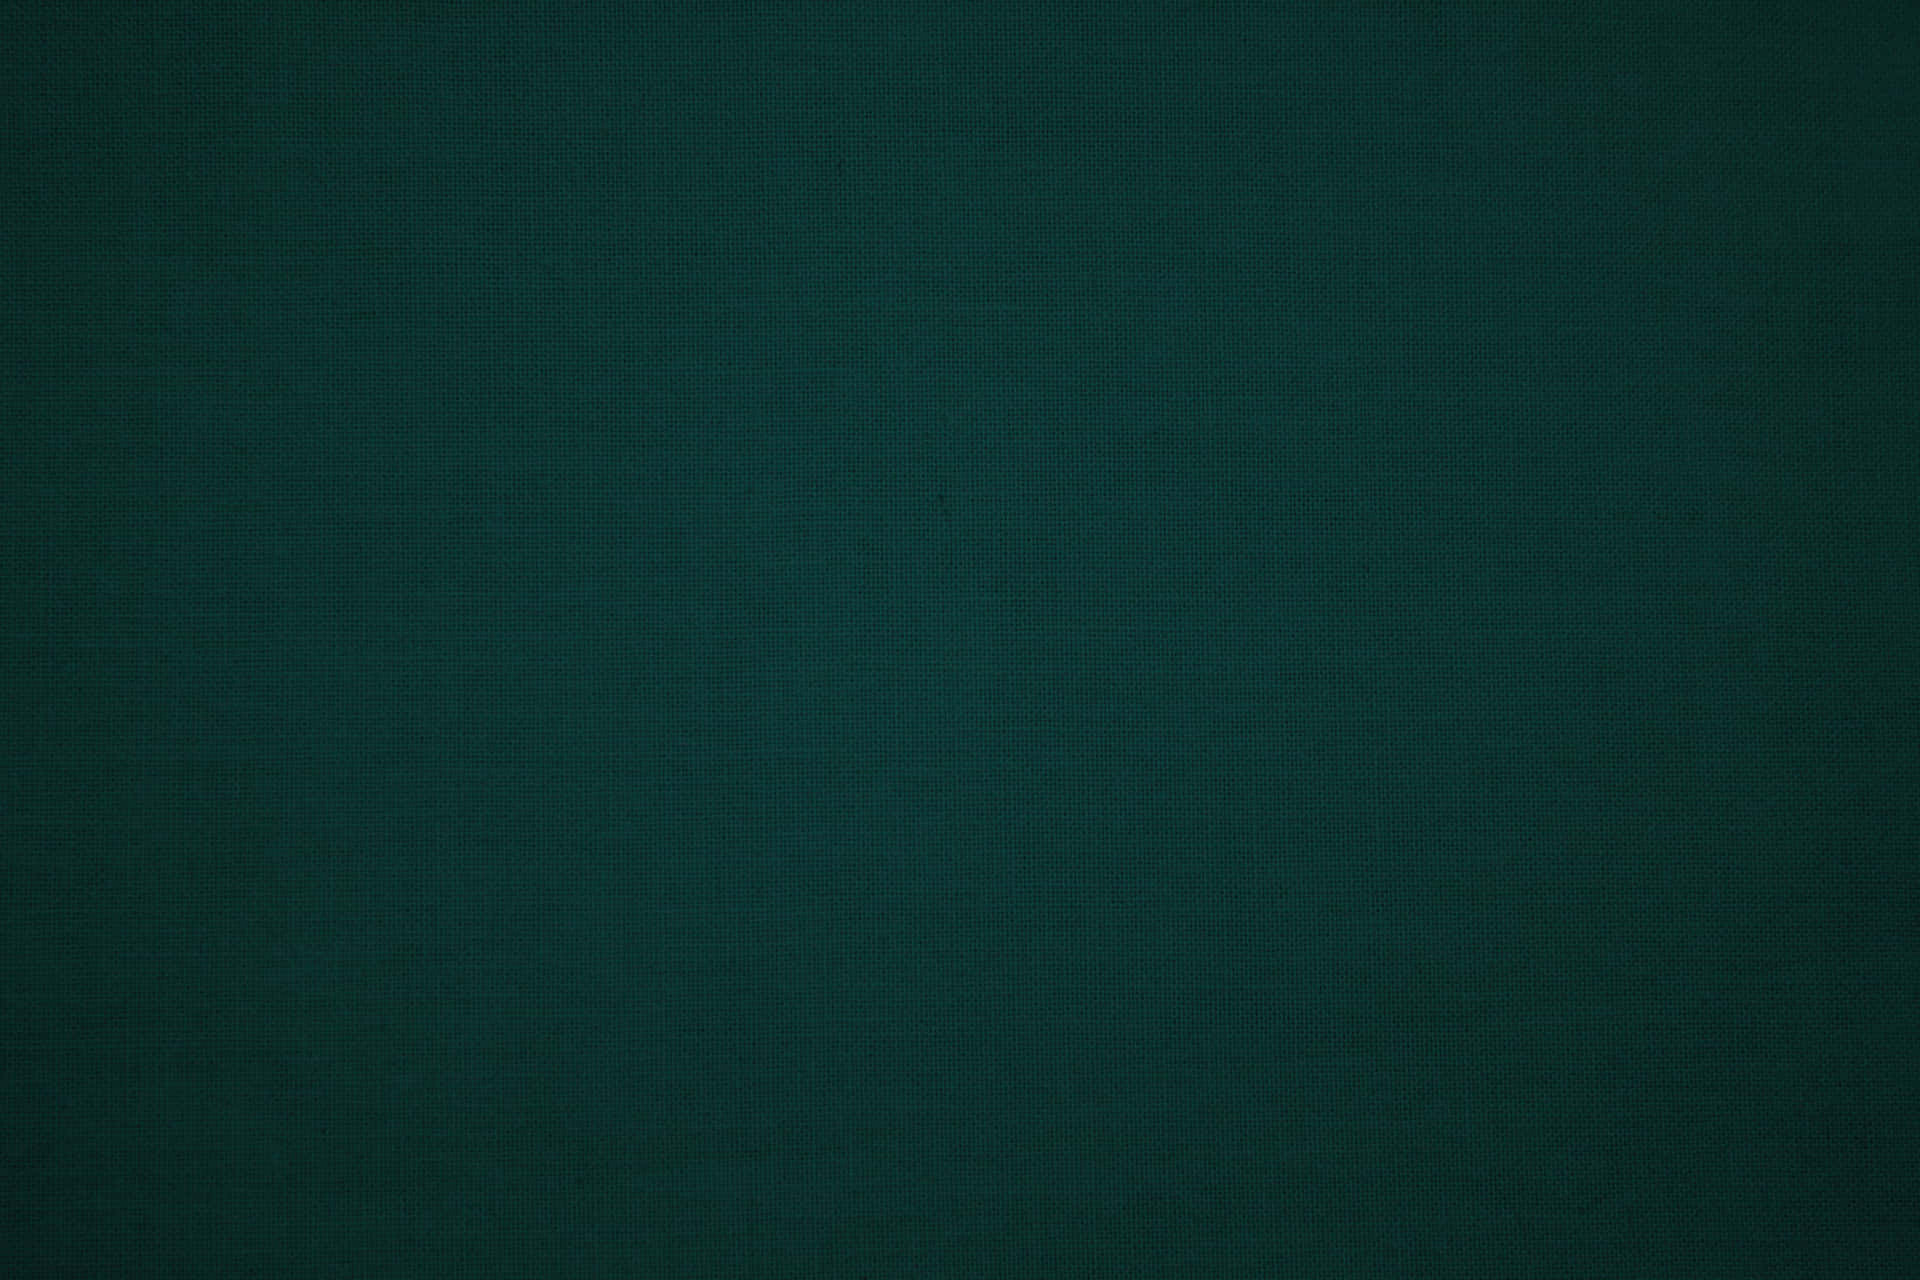 Fundoem Tom De Verde-azulado Escuro De 3600 X 2400